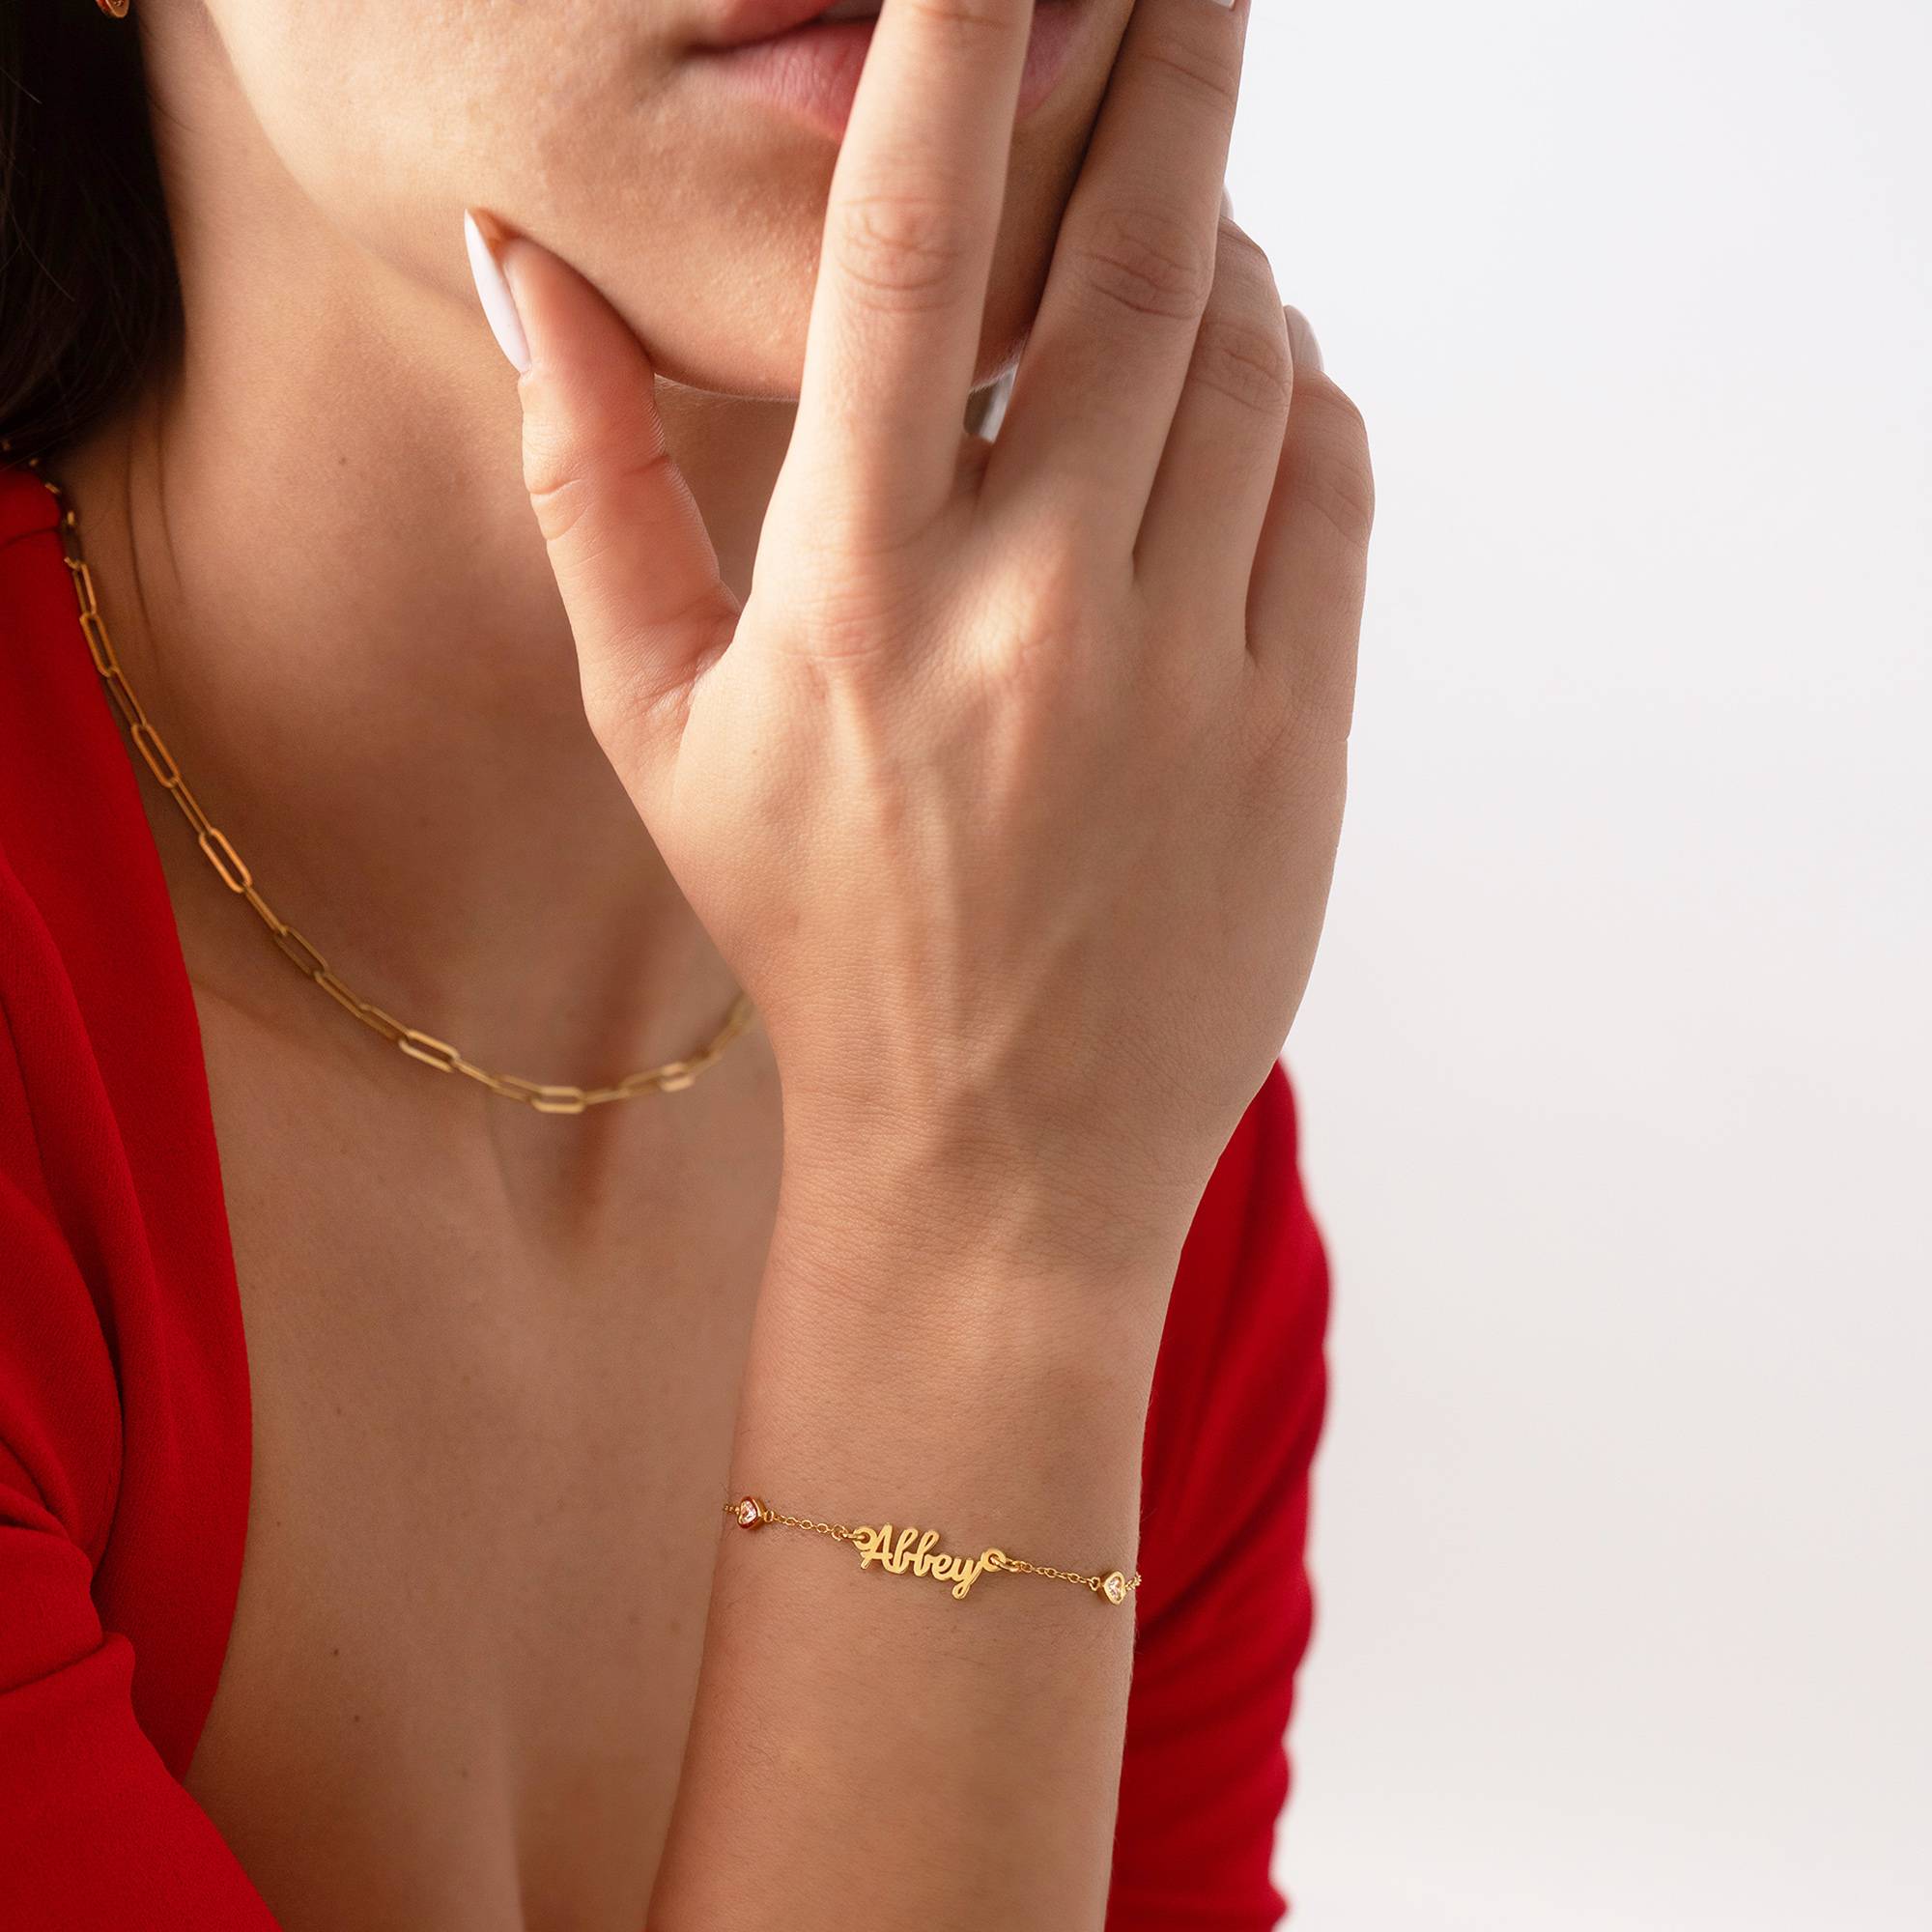 Charli Herzenkette Namensarmband - 750er Gold-Vermeil-1 Produktfoto